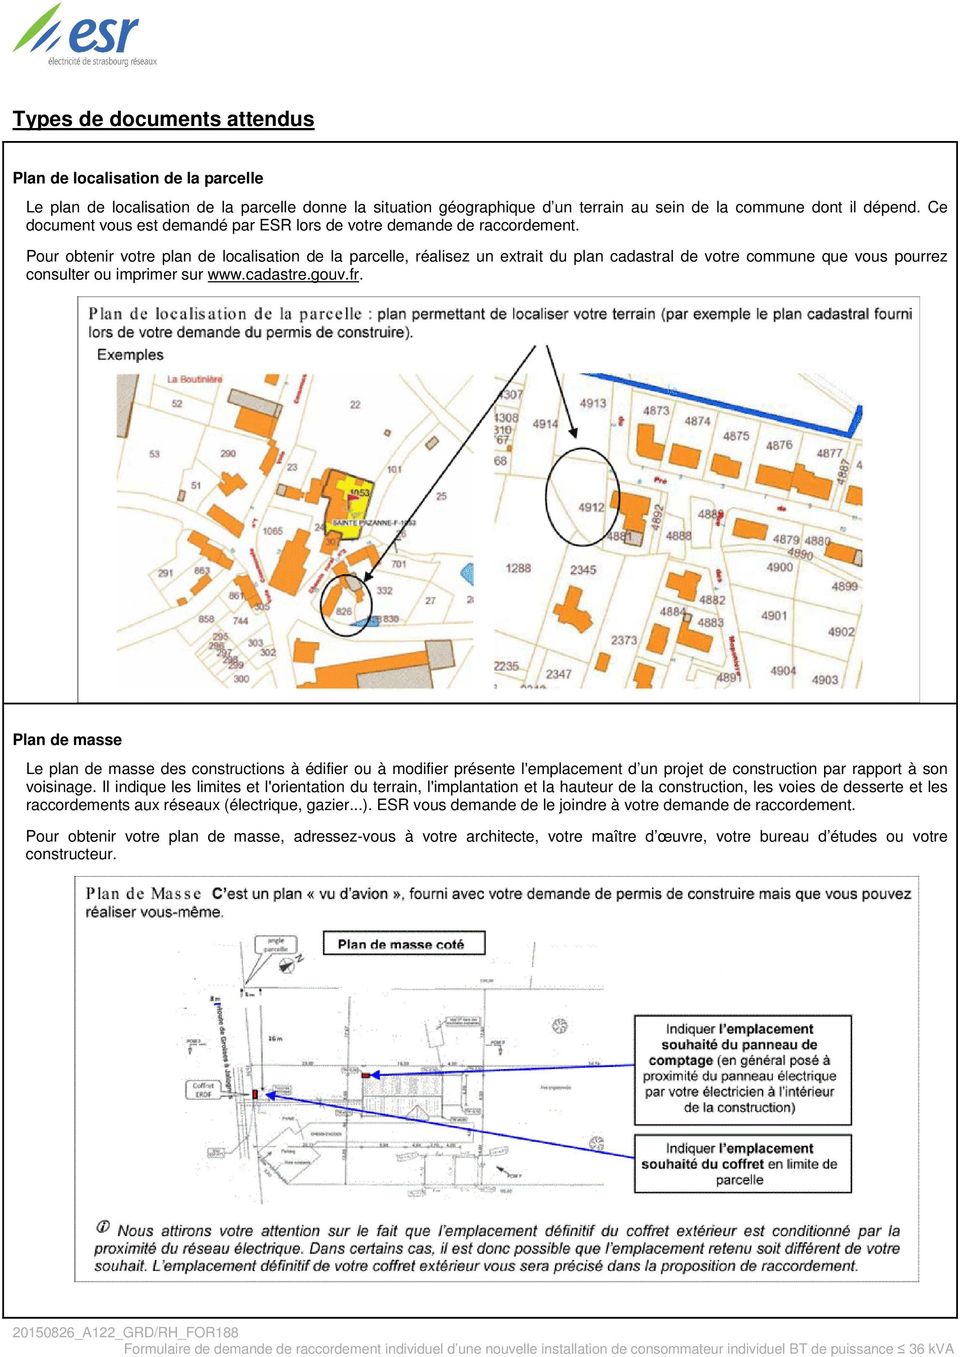 Pour obtenir votre plan de localisation de la parcelle, réalisez un extrait du plan cadastral de votre commune que vous pourrez consulter ou imprimer sur www.cadastre.gouv.fr.